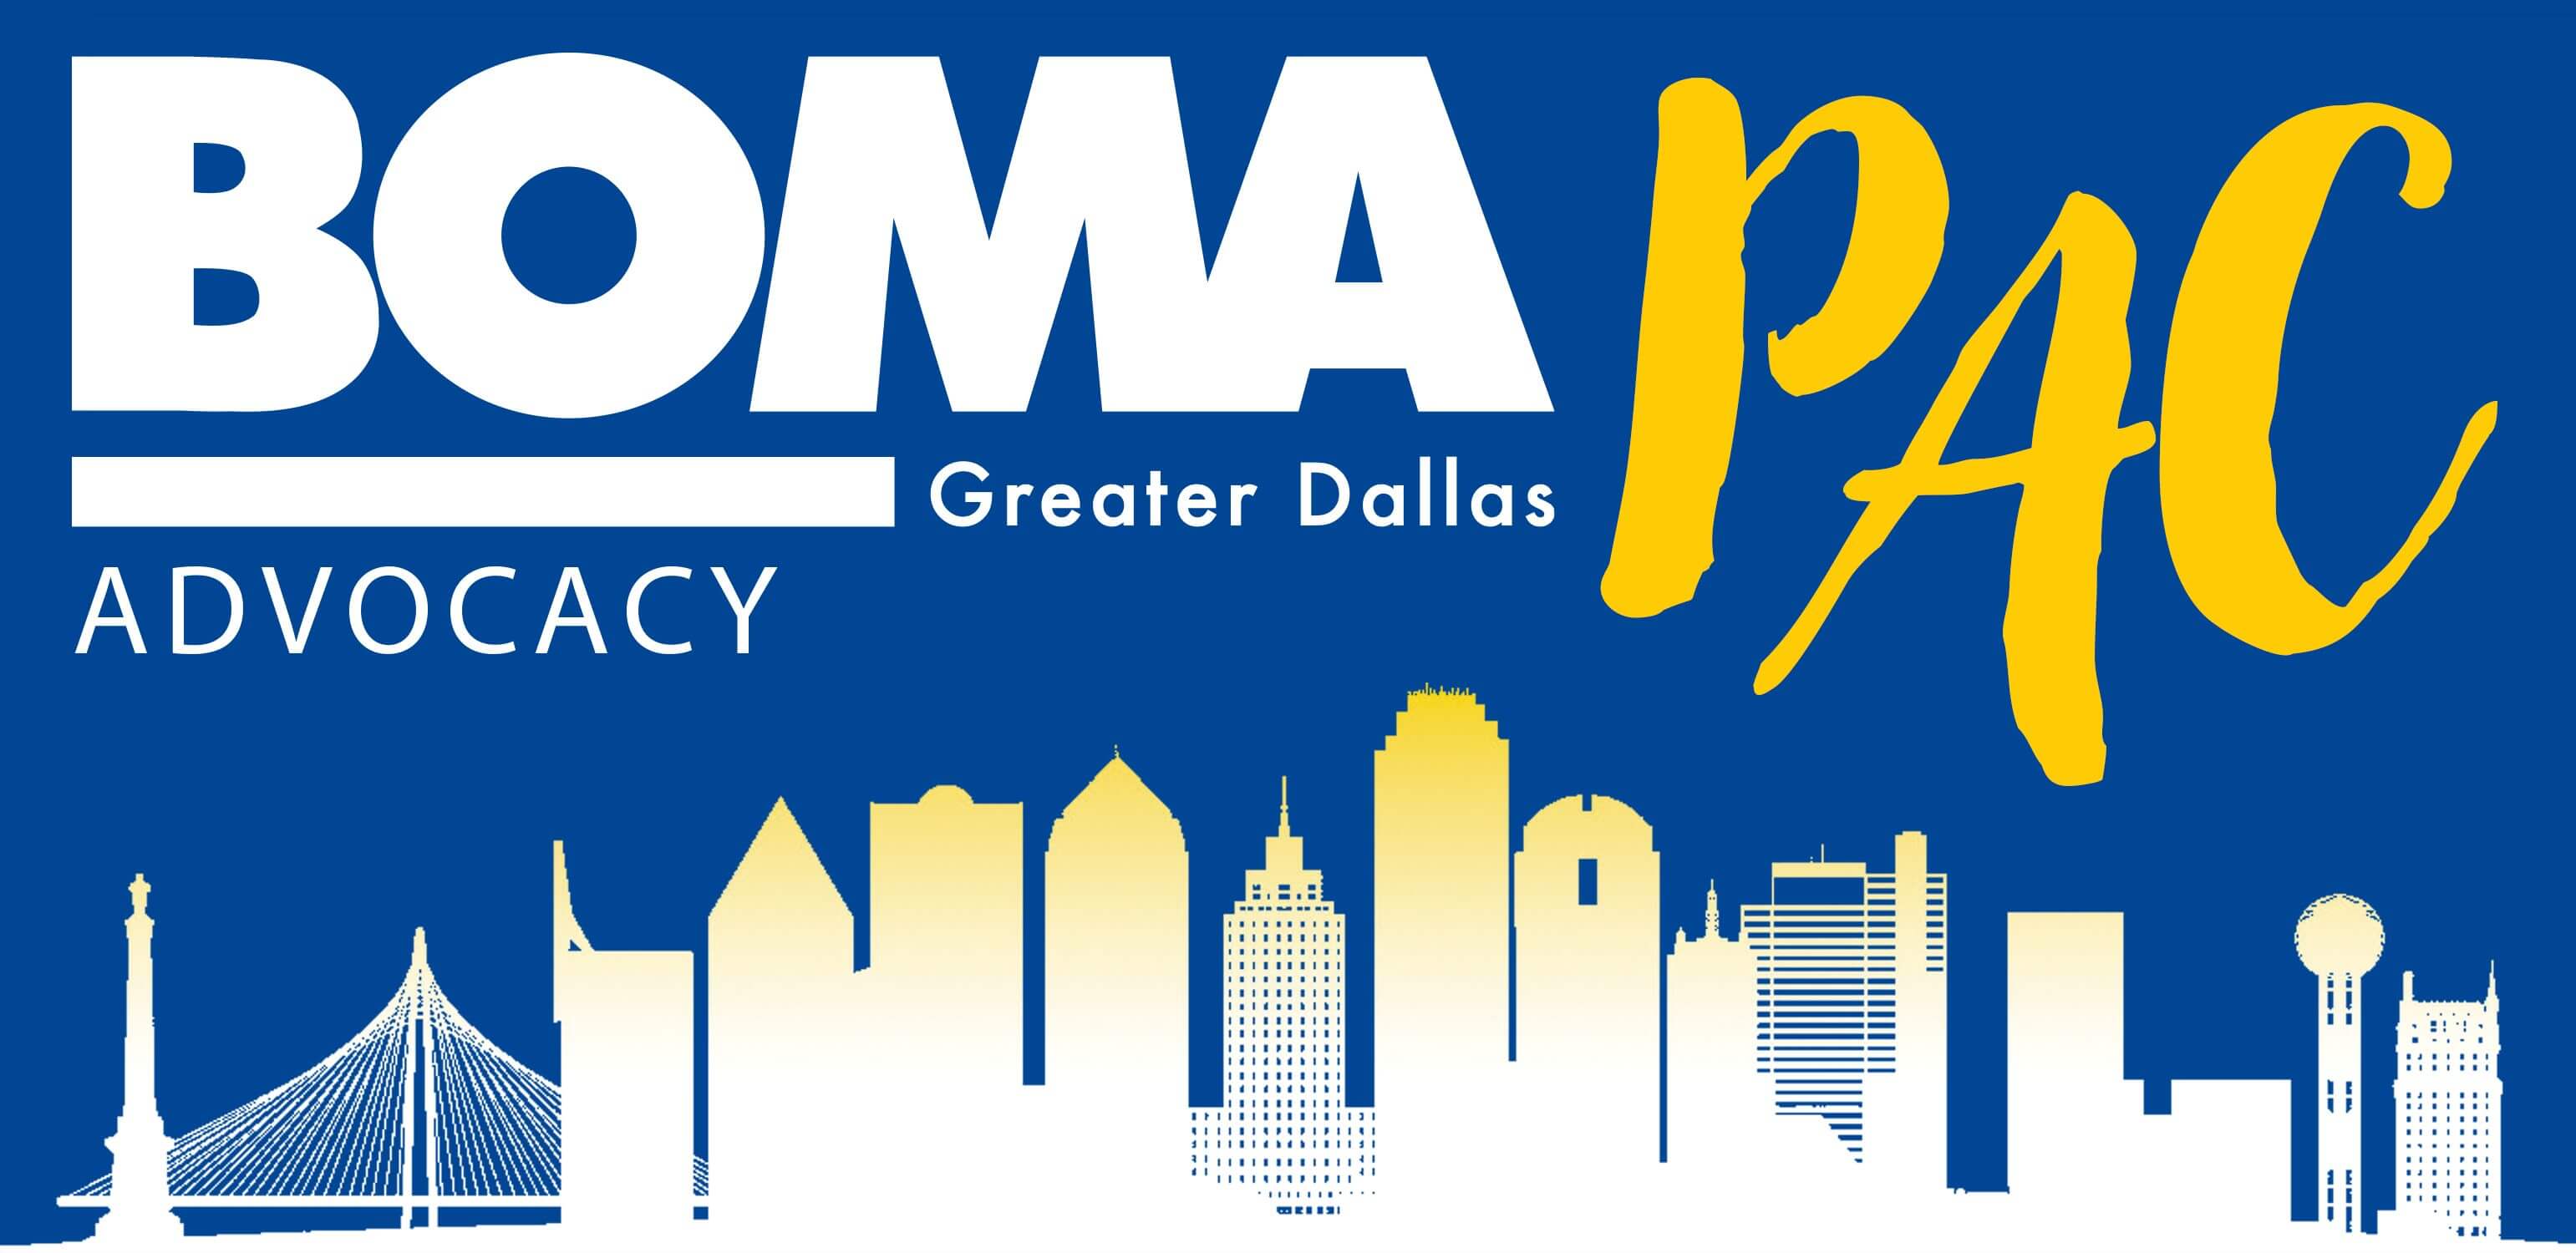 BOMA Greater Dallas Advocacy PAC